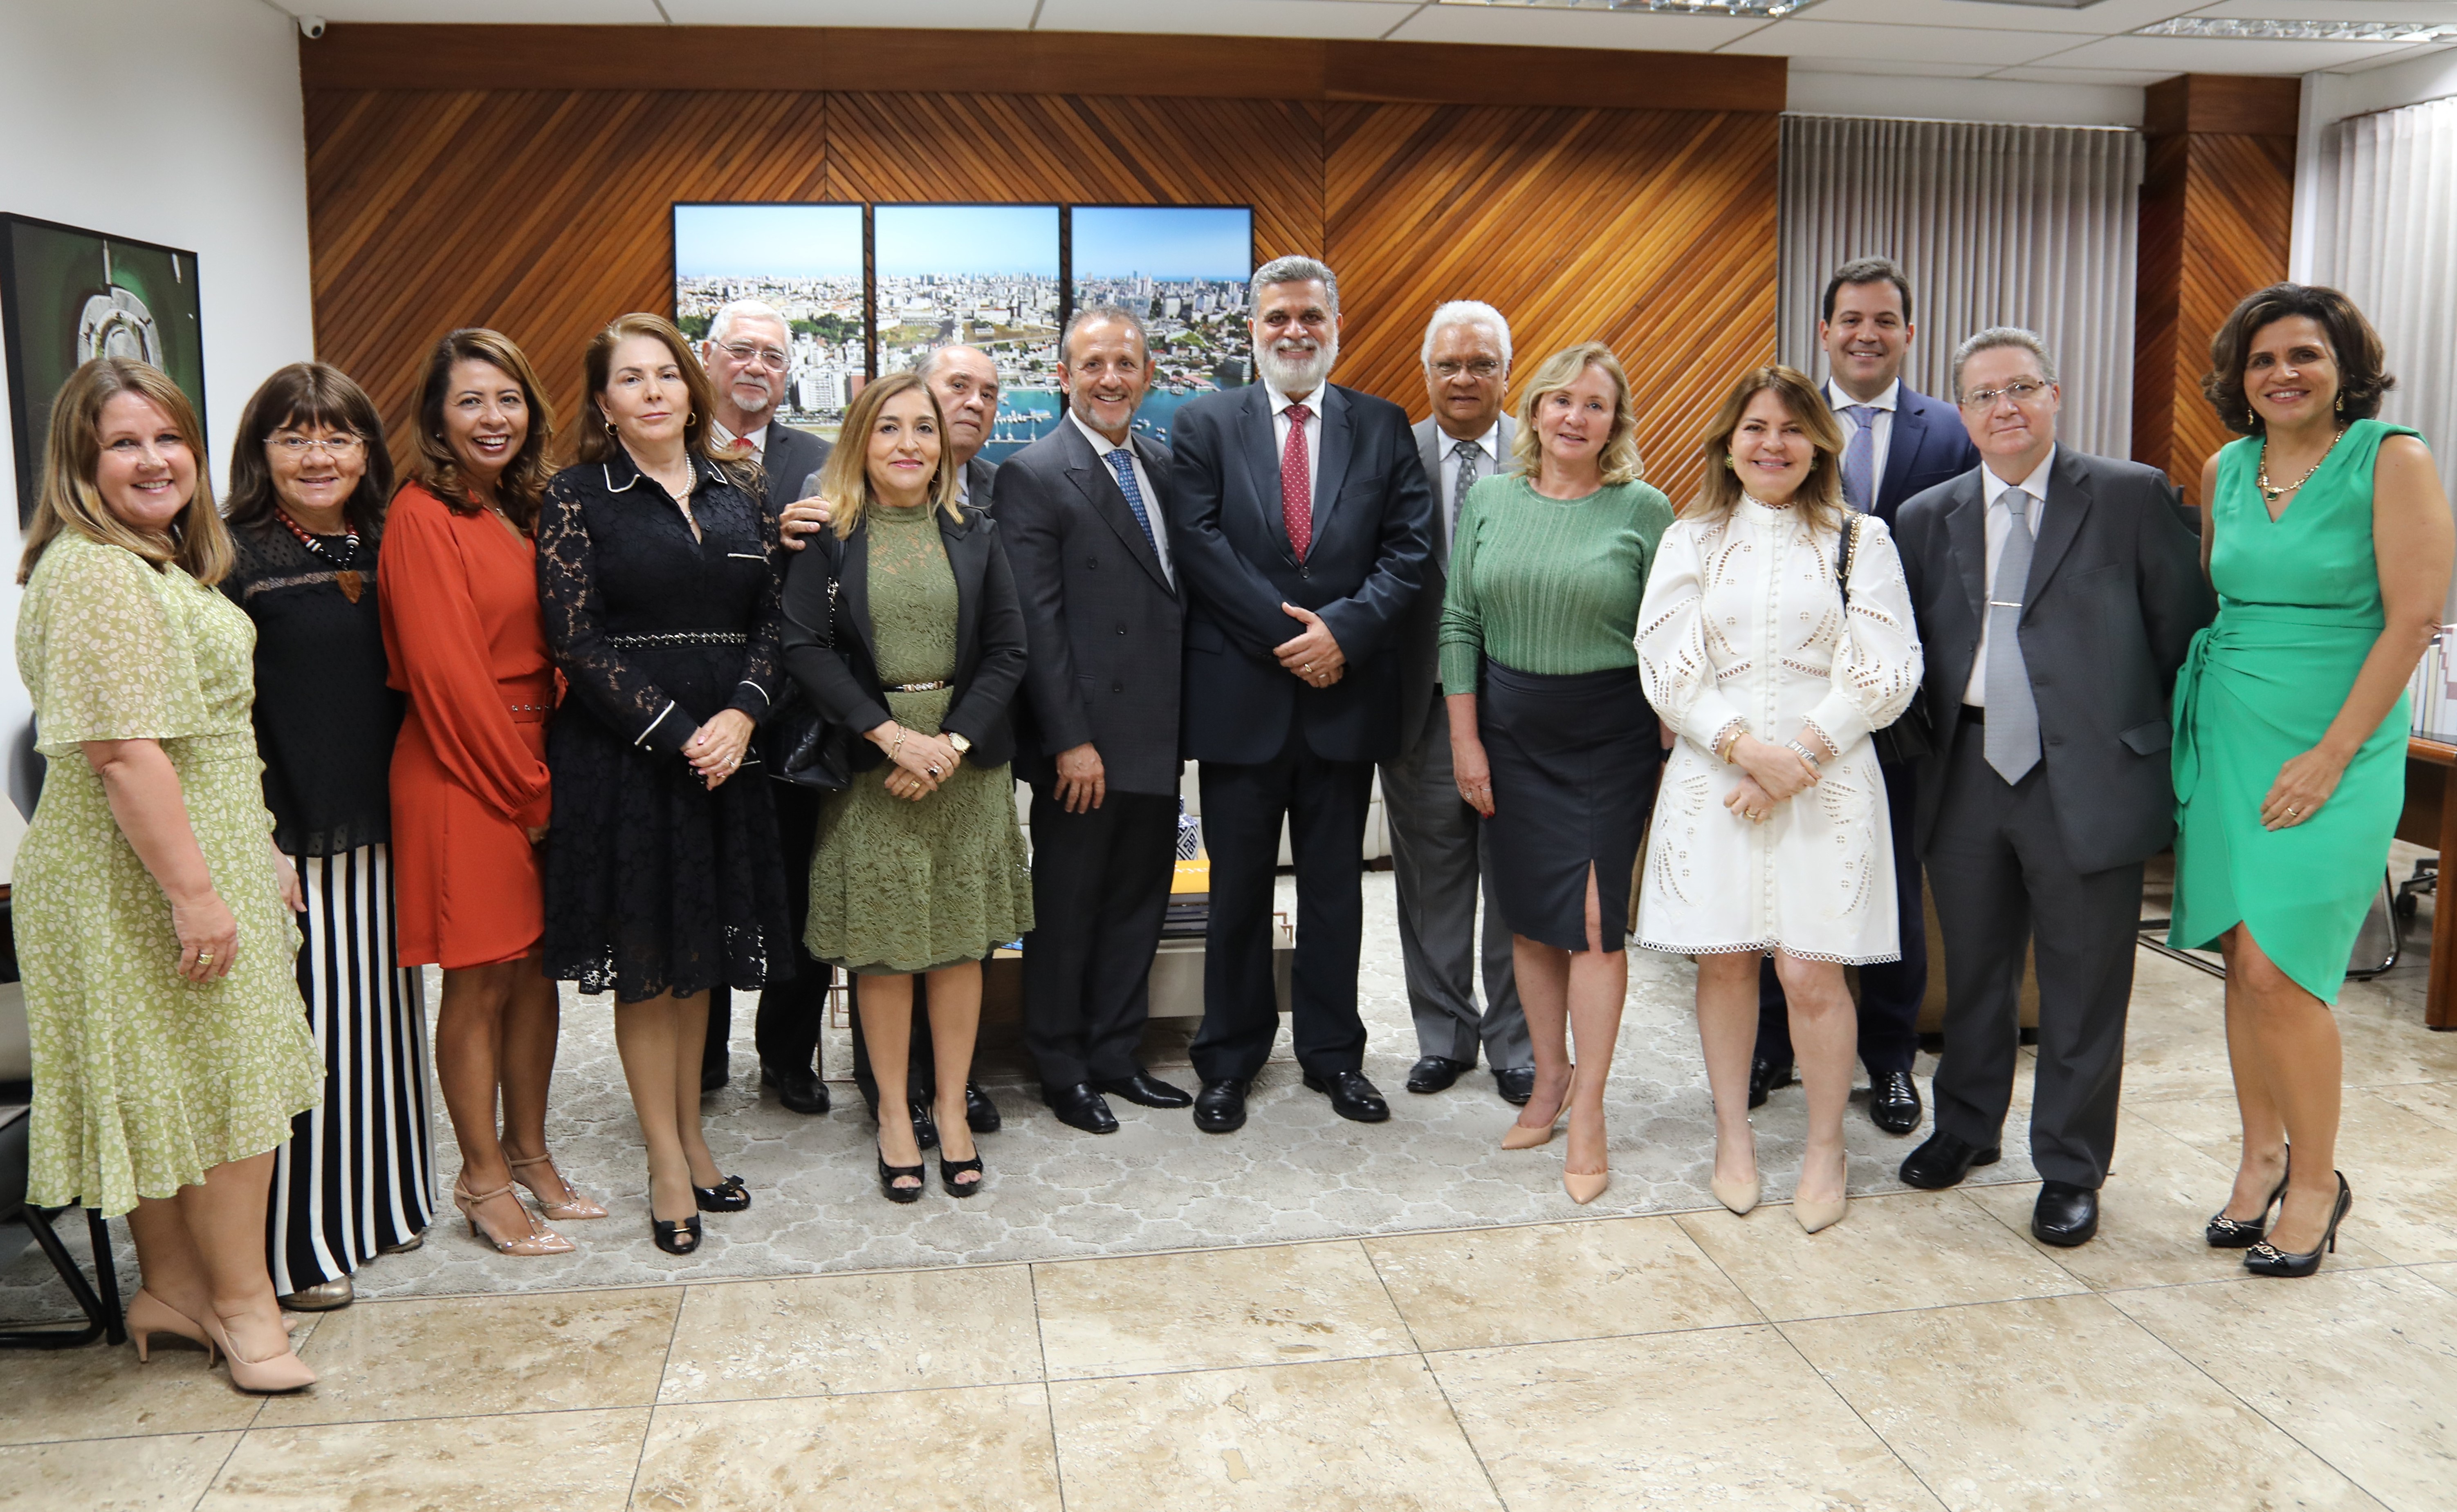 Fotografia oficial do ministro Lélio Bentes com os desembargadores e demais participantes da reunião